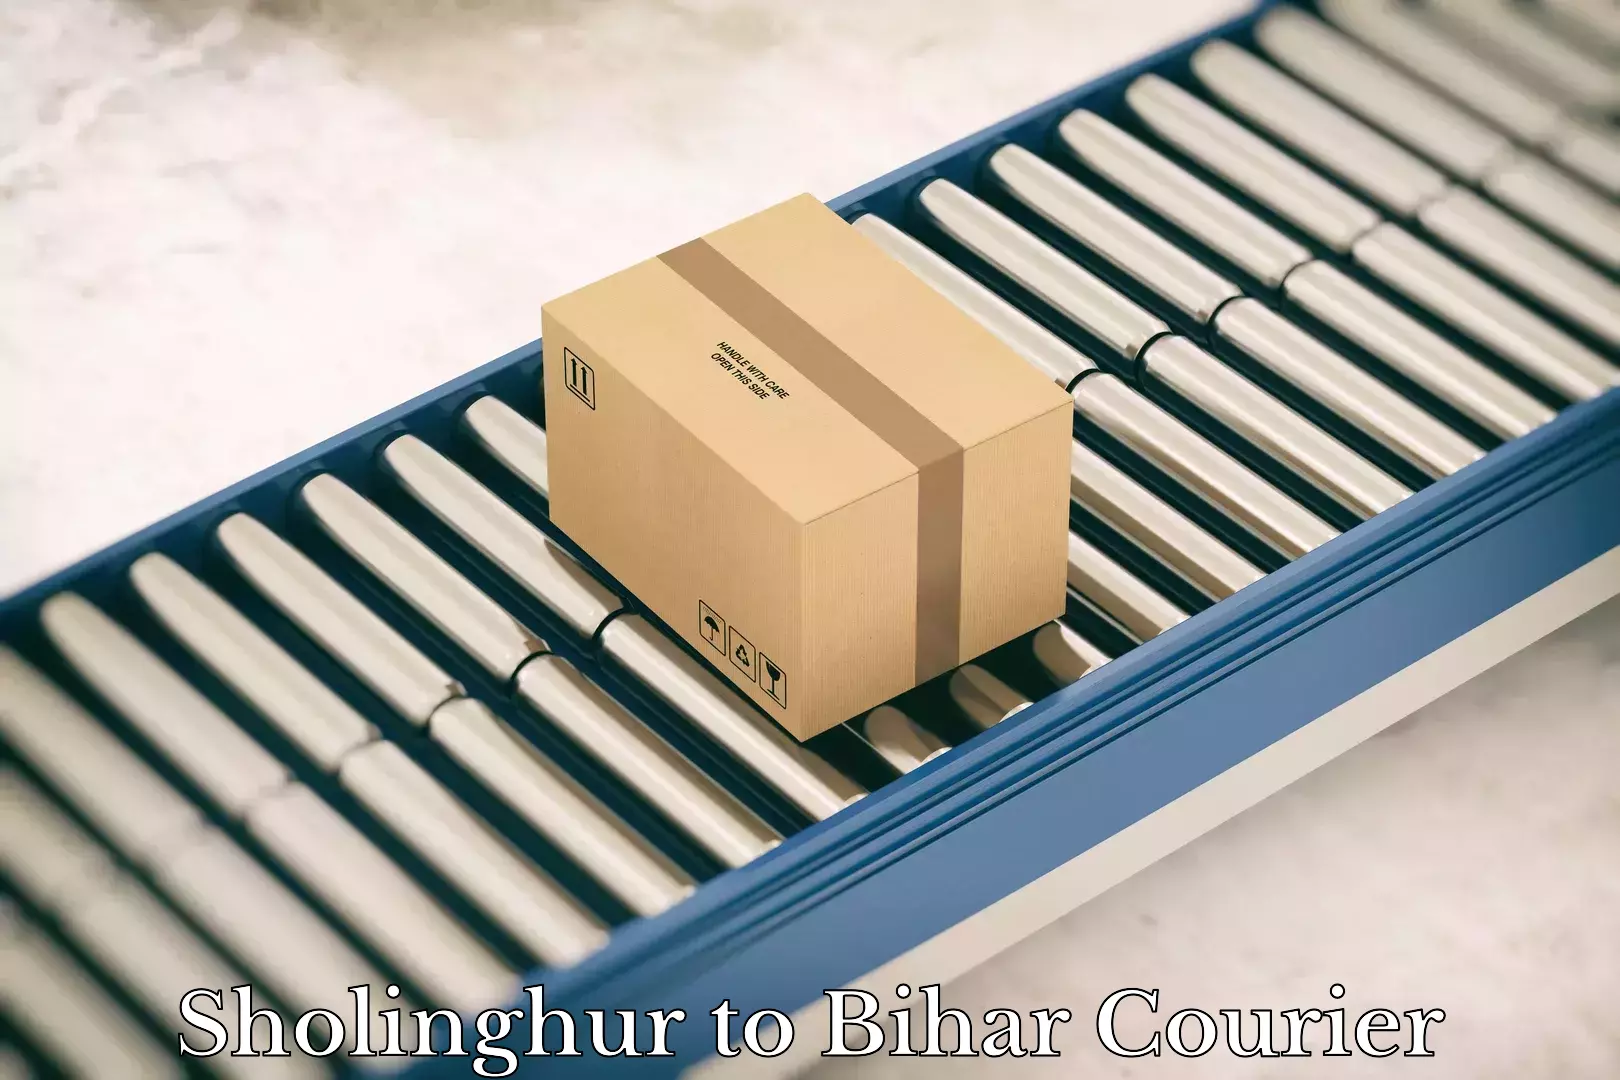 Global parcel delivery Sholinghur to Bihar